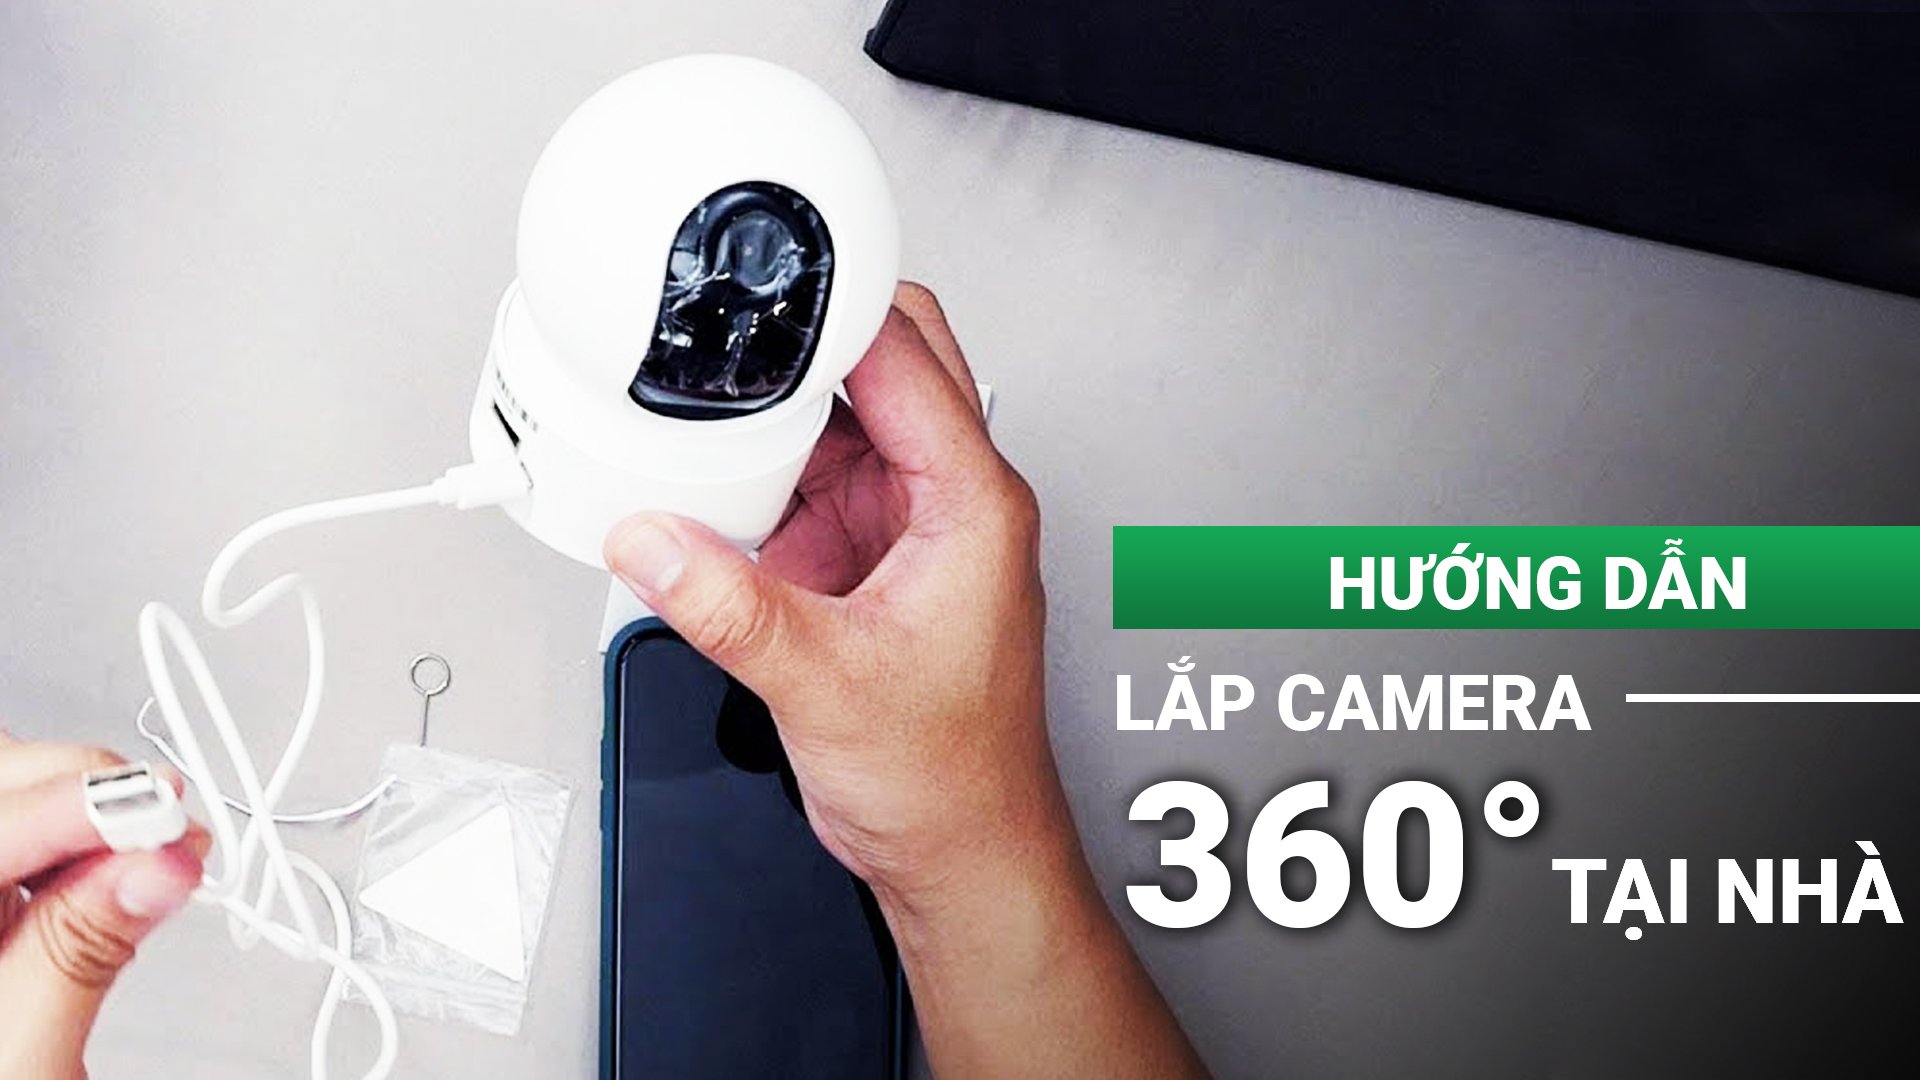 Hướng dẫn lắp camera 360 độ tại nhà